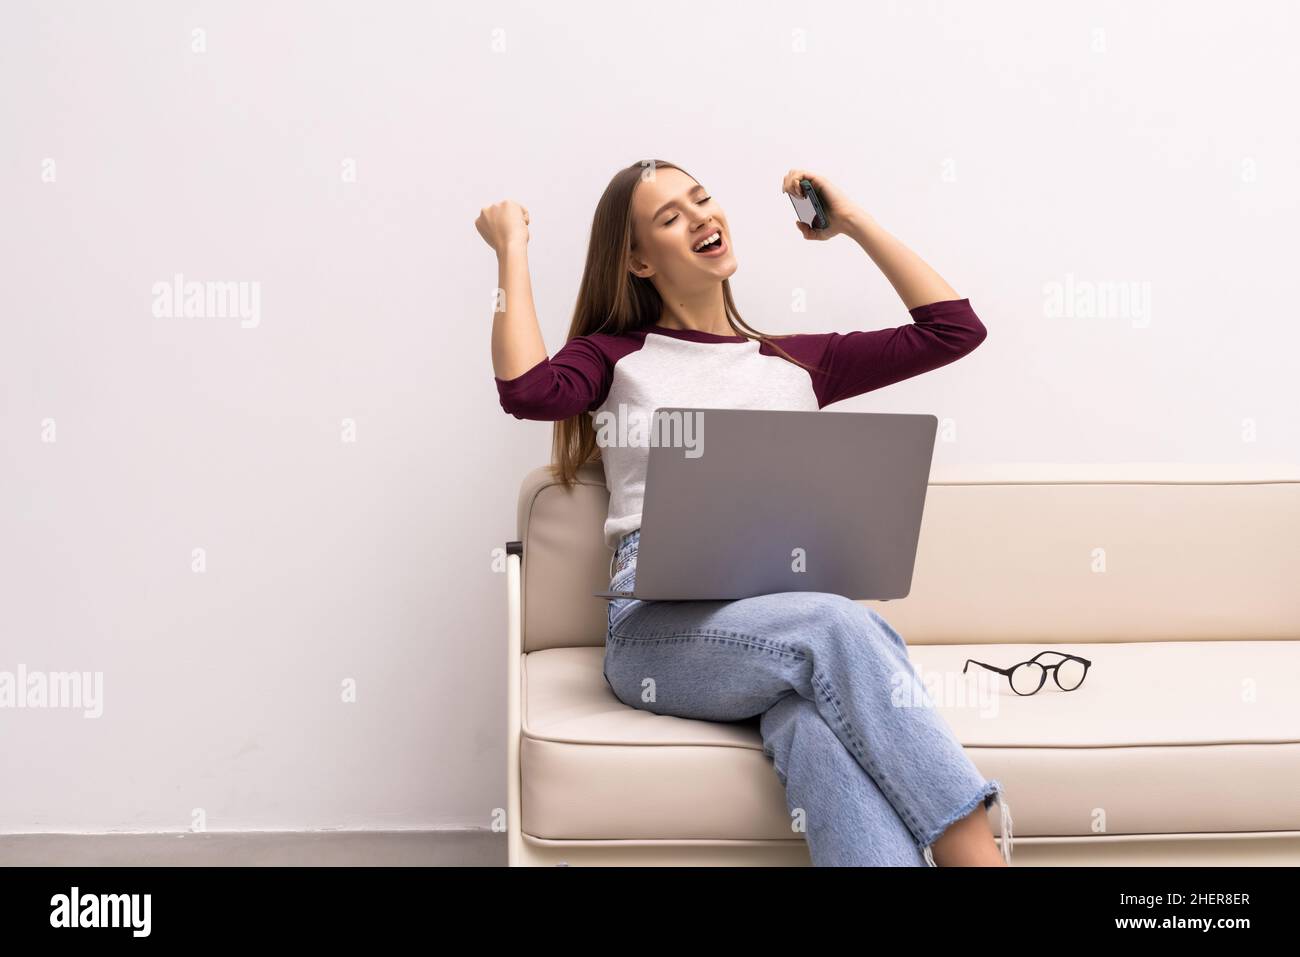 Portrait d'une femme assise sur le sol et regardant l'écran de l'ordinateur portable, tenant le téléphone et la carte, le compte de la banque, la loterie gagnante, créditant une grande AMO Banque D'Images